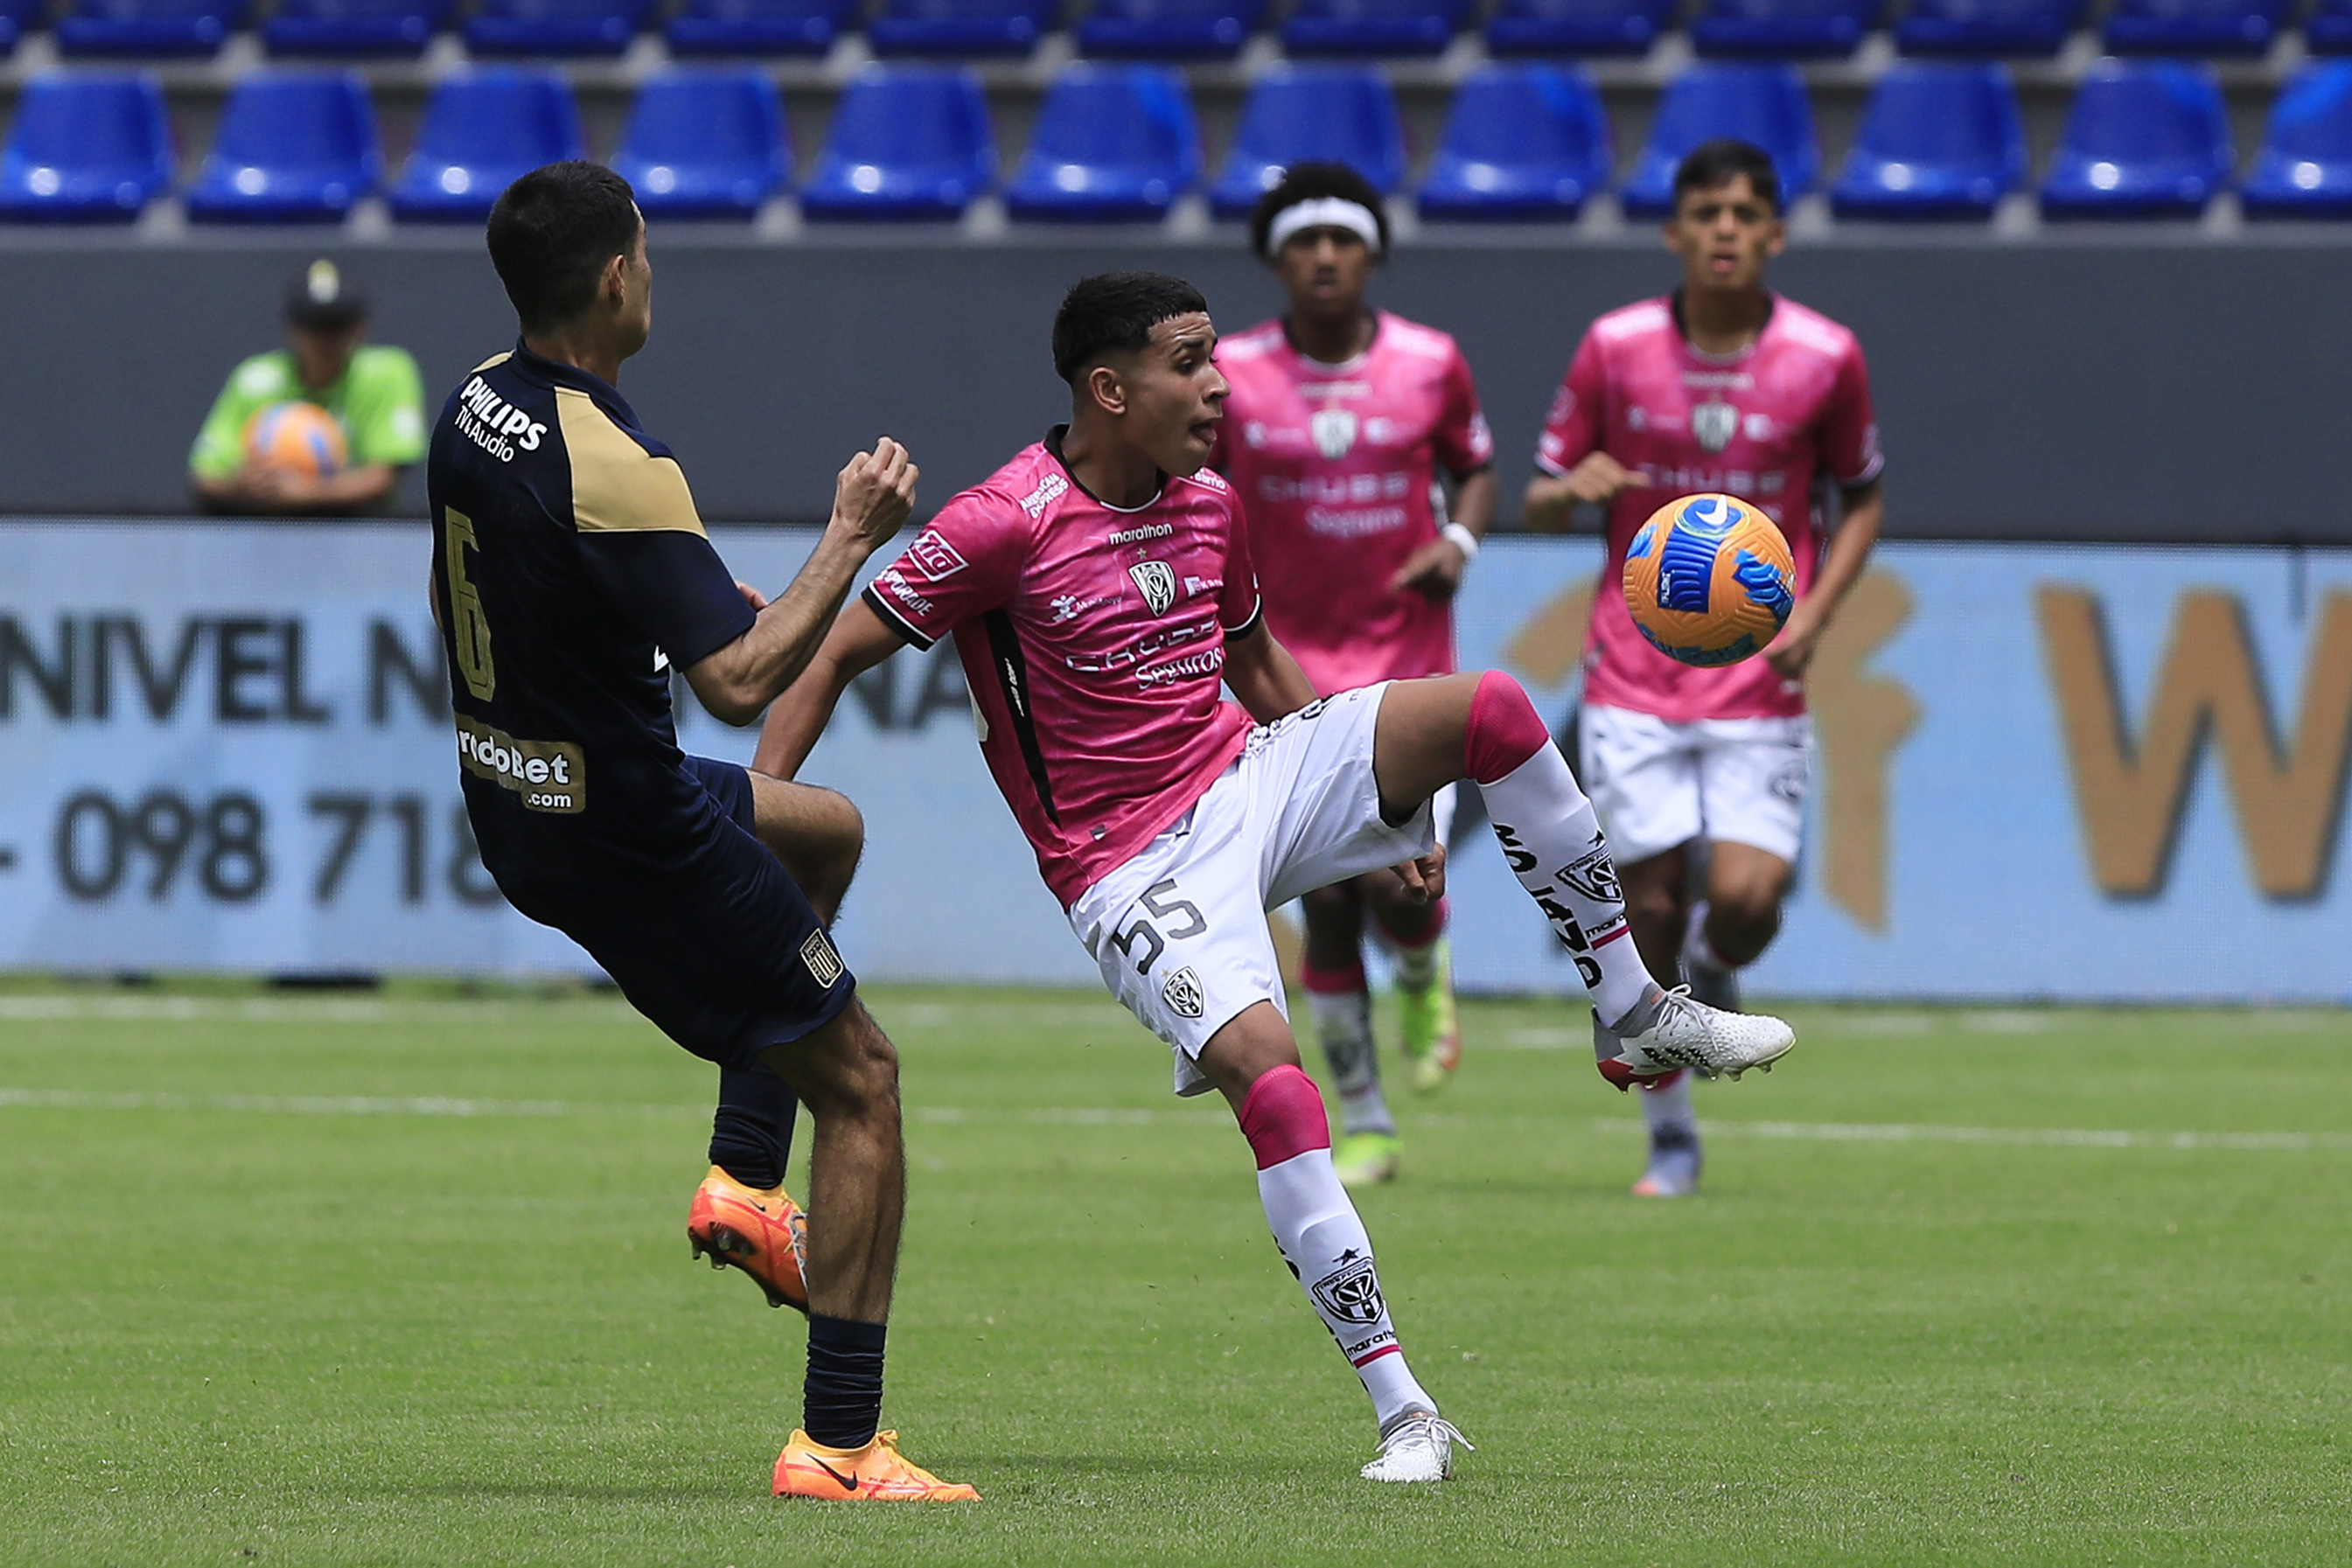 Paez gilt als das Juwel des südamerikanischen Fußballs